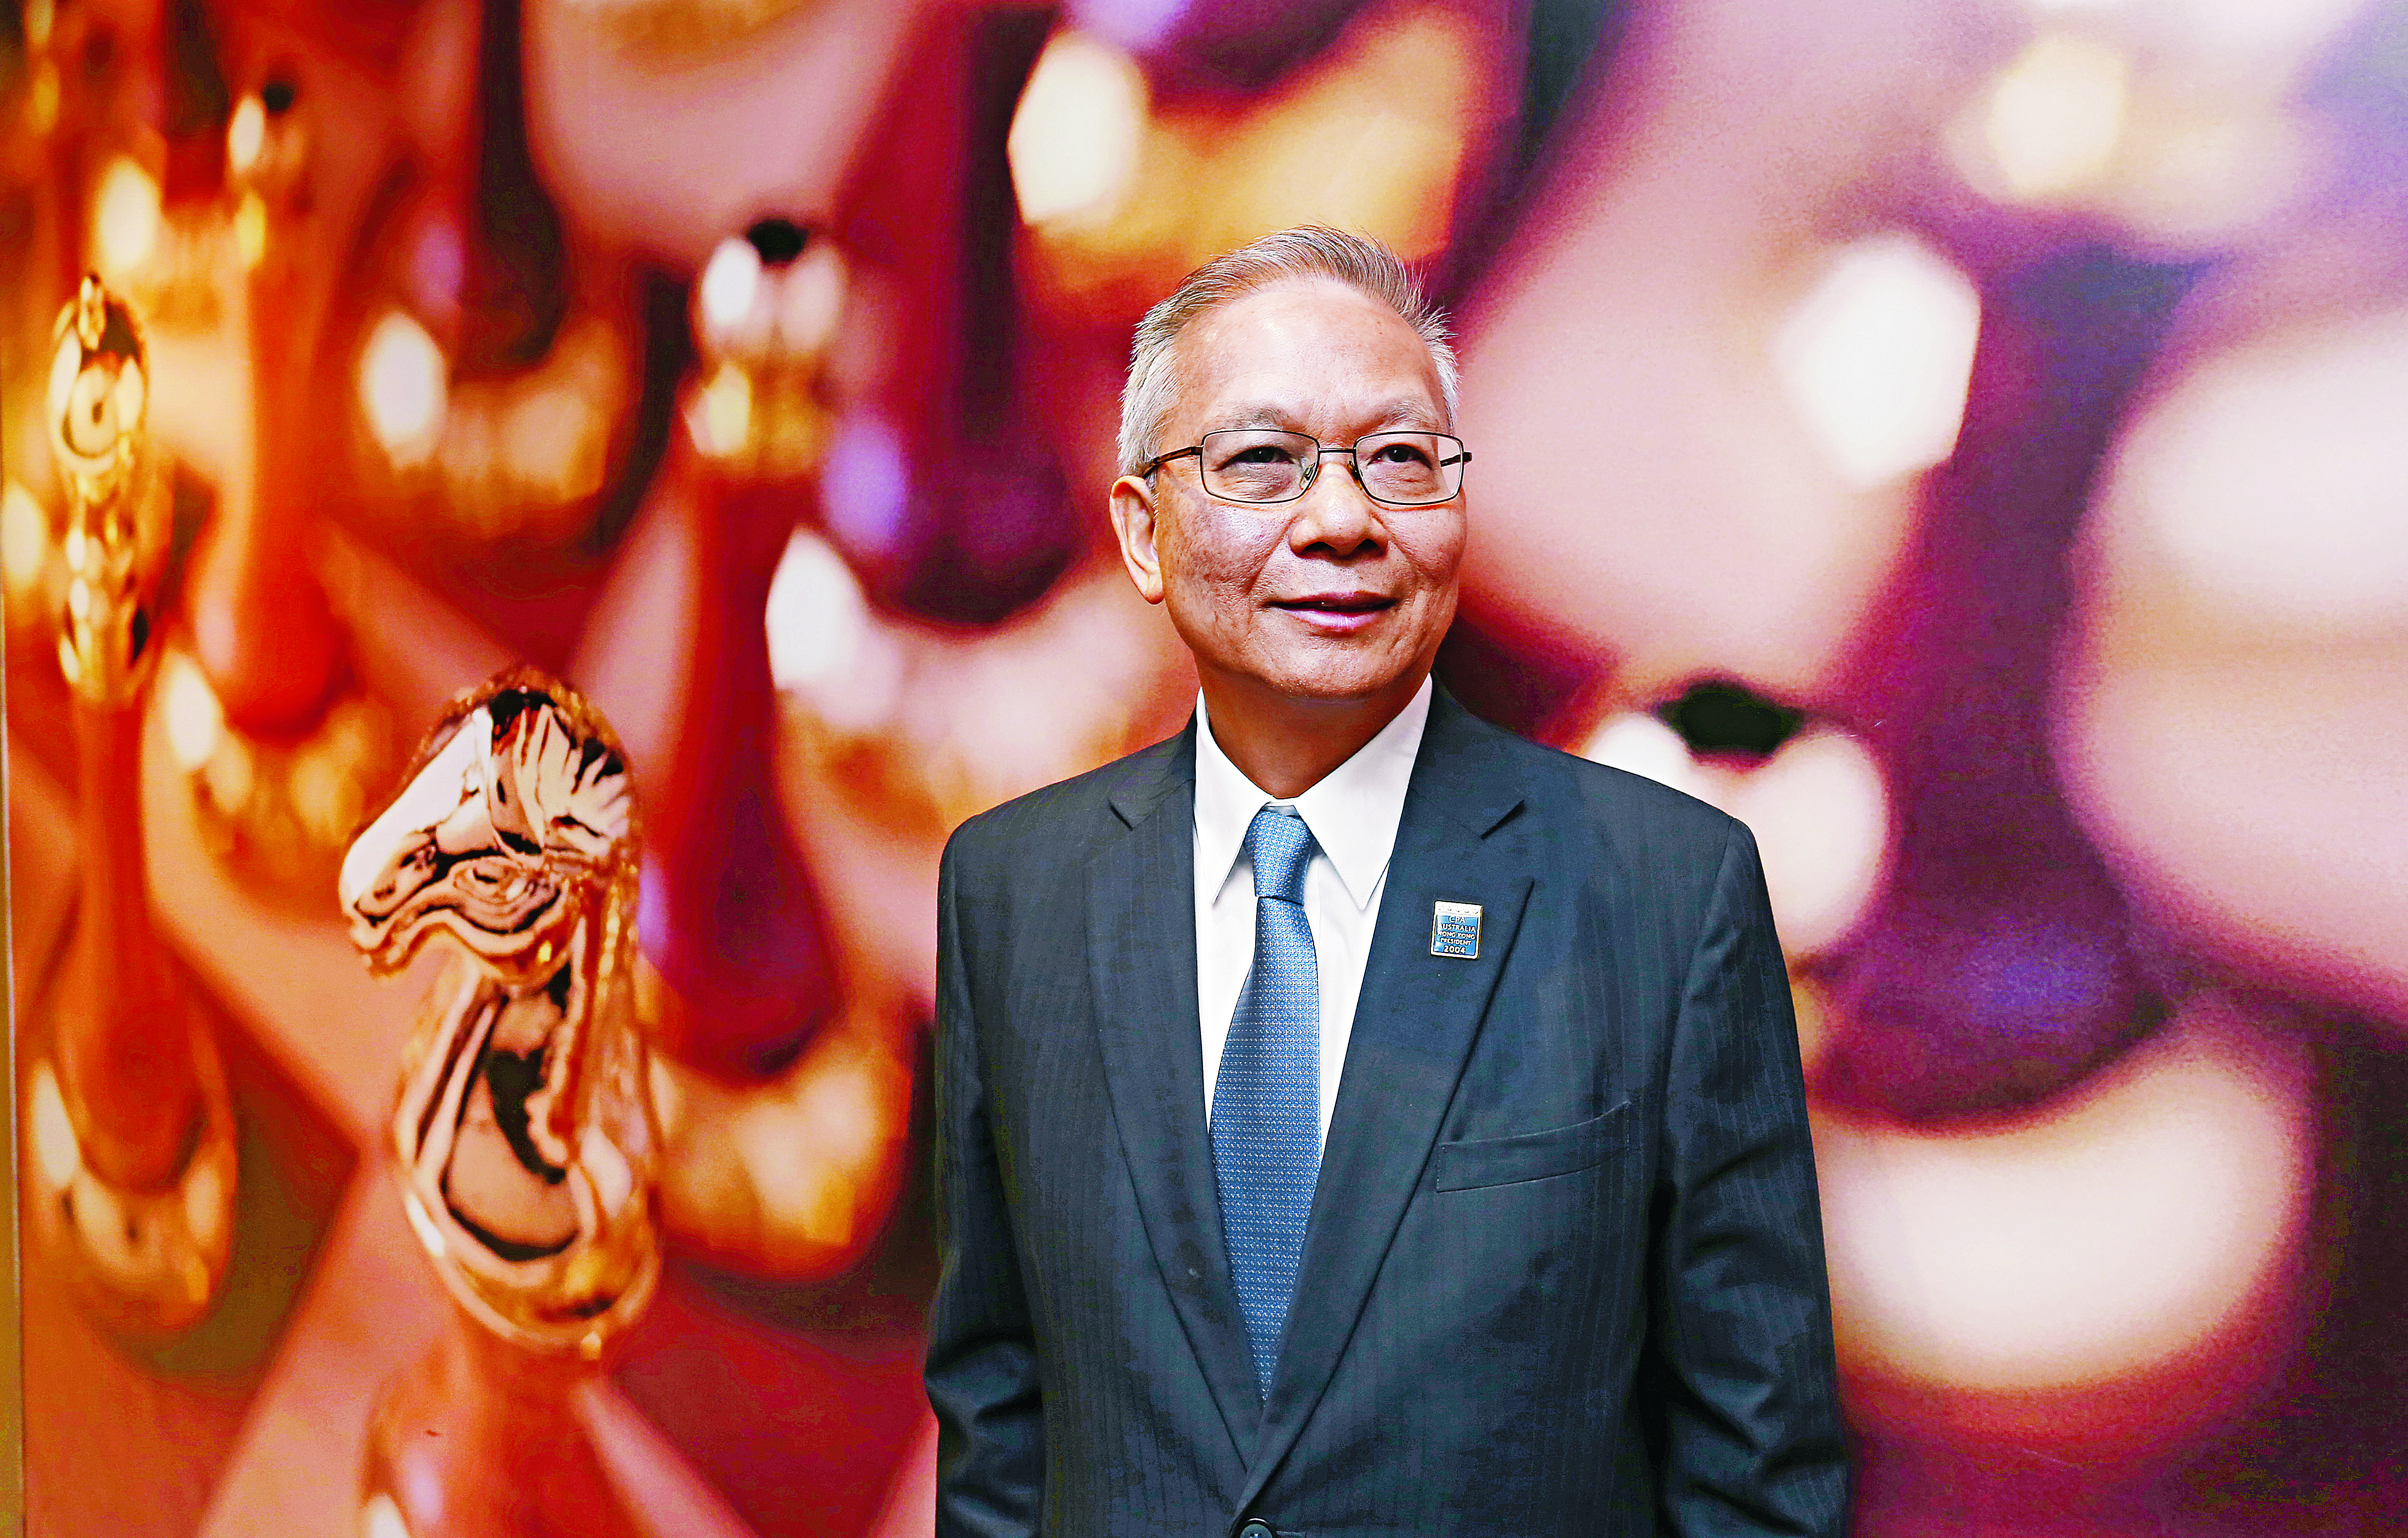 Marcellus Wong Yui-keung, senior advisor for Tax Services at PricewaterhouseCoopers Hong Kong. Photo: Jonathan Wong